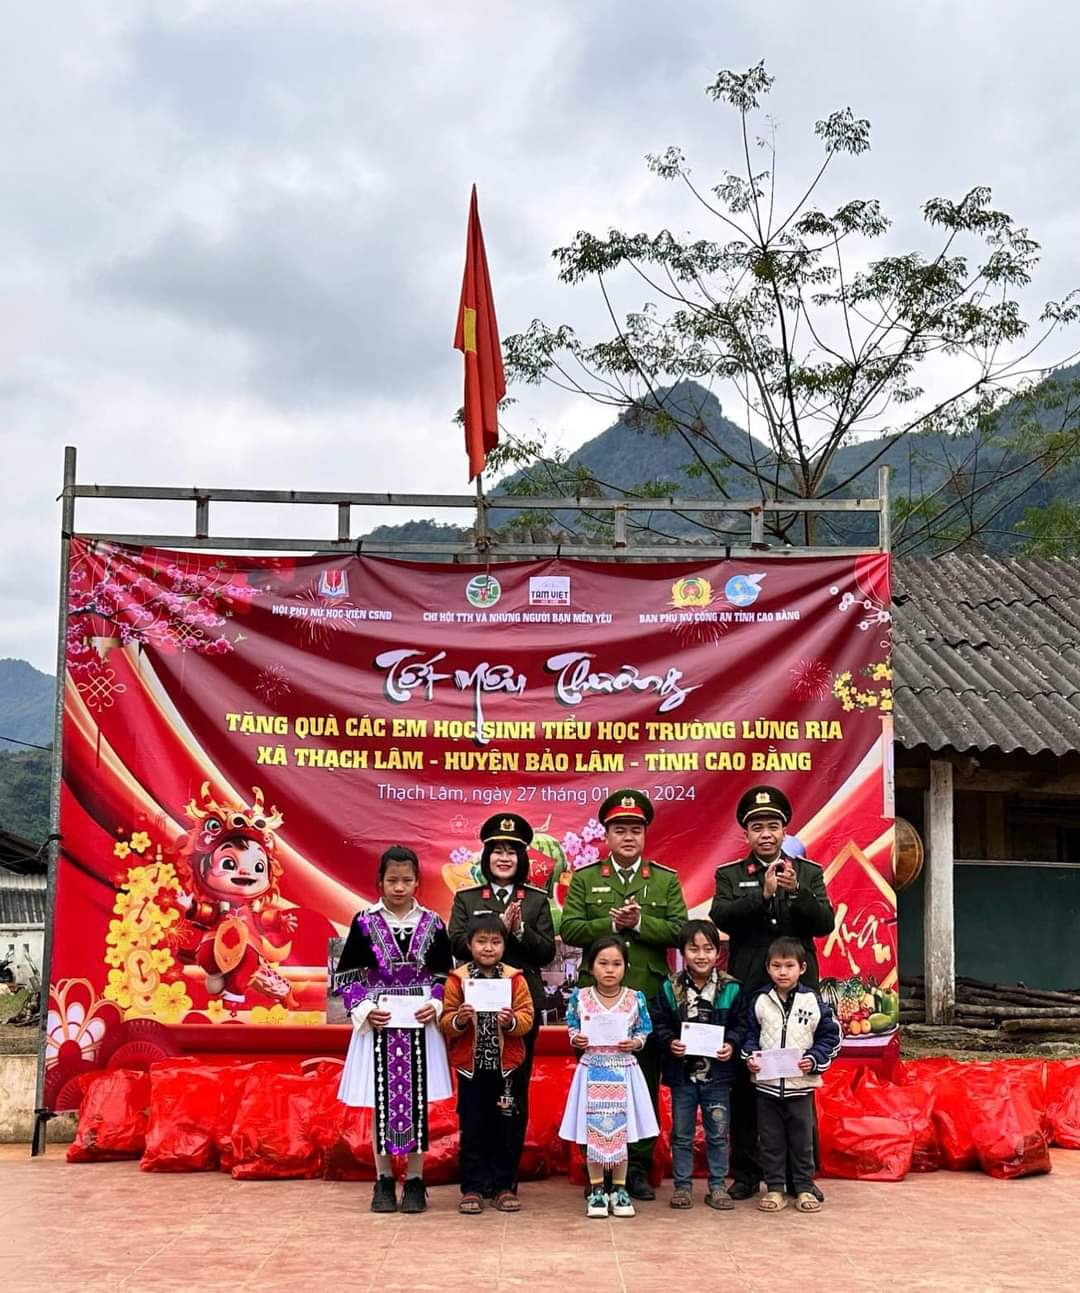 Ban Phụ nữ Công an tỉnh Cao Bằng phối hợp tổ chức Chương trình “Tết yêu thương” tại điểm trường Lũng Rịa, xã Thạch Lâm, Huyện Bảo Lâm